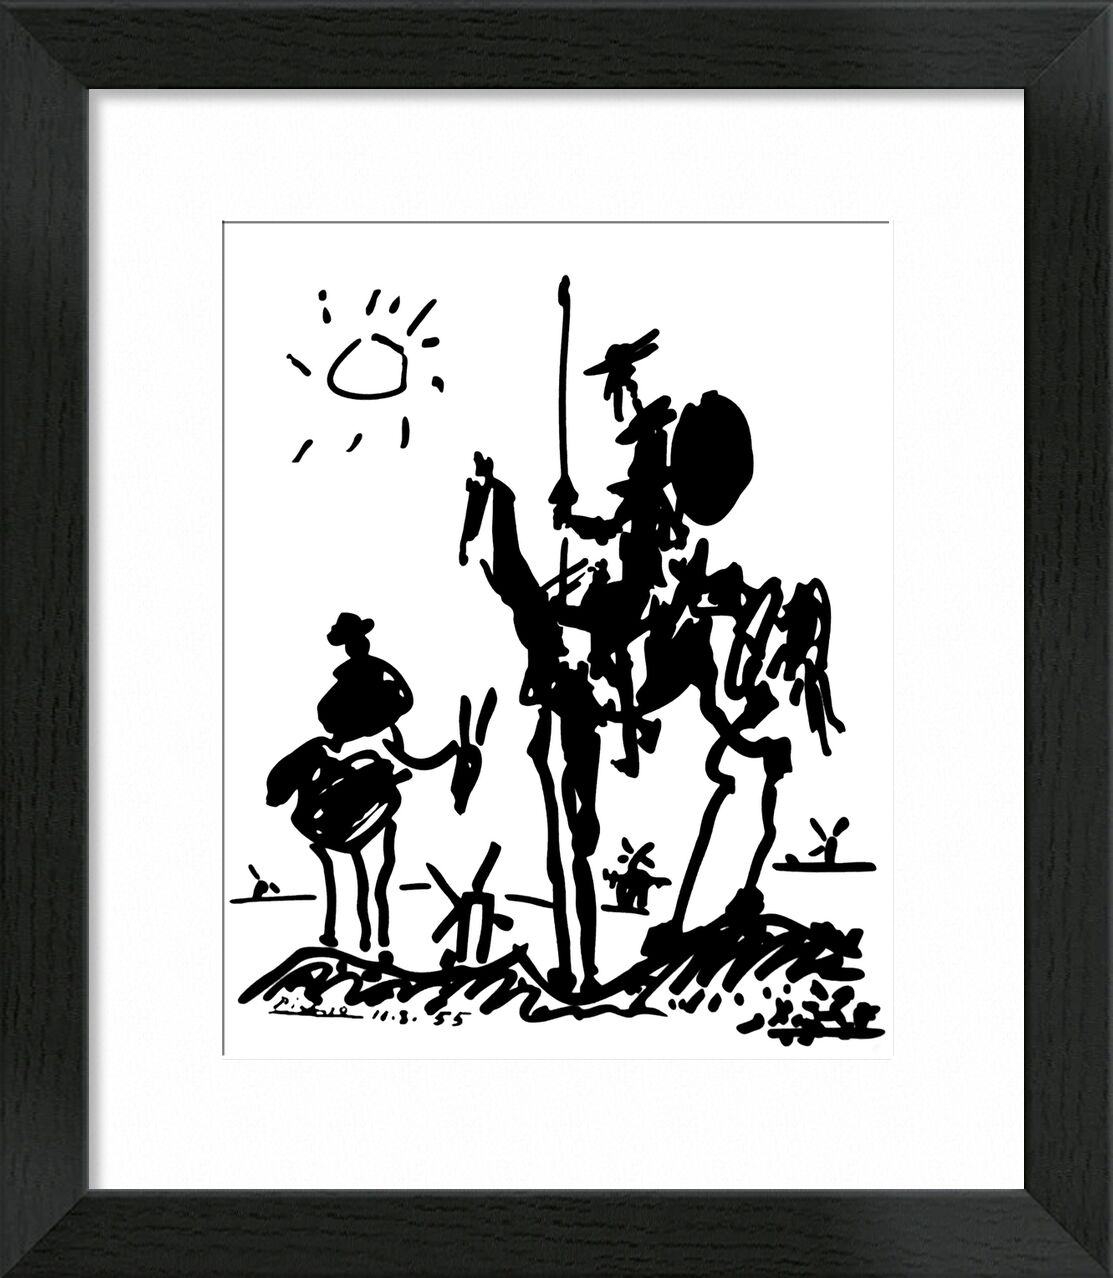 Don Quixote von Bildende Kunst, Prodi Art, PABLO PICASSO, Sonne, Bleistiftzeichnung, Zeichnung, Schwarz und weiß, Pferd, Don Quijote, Esel